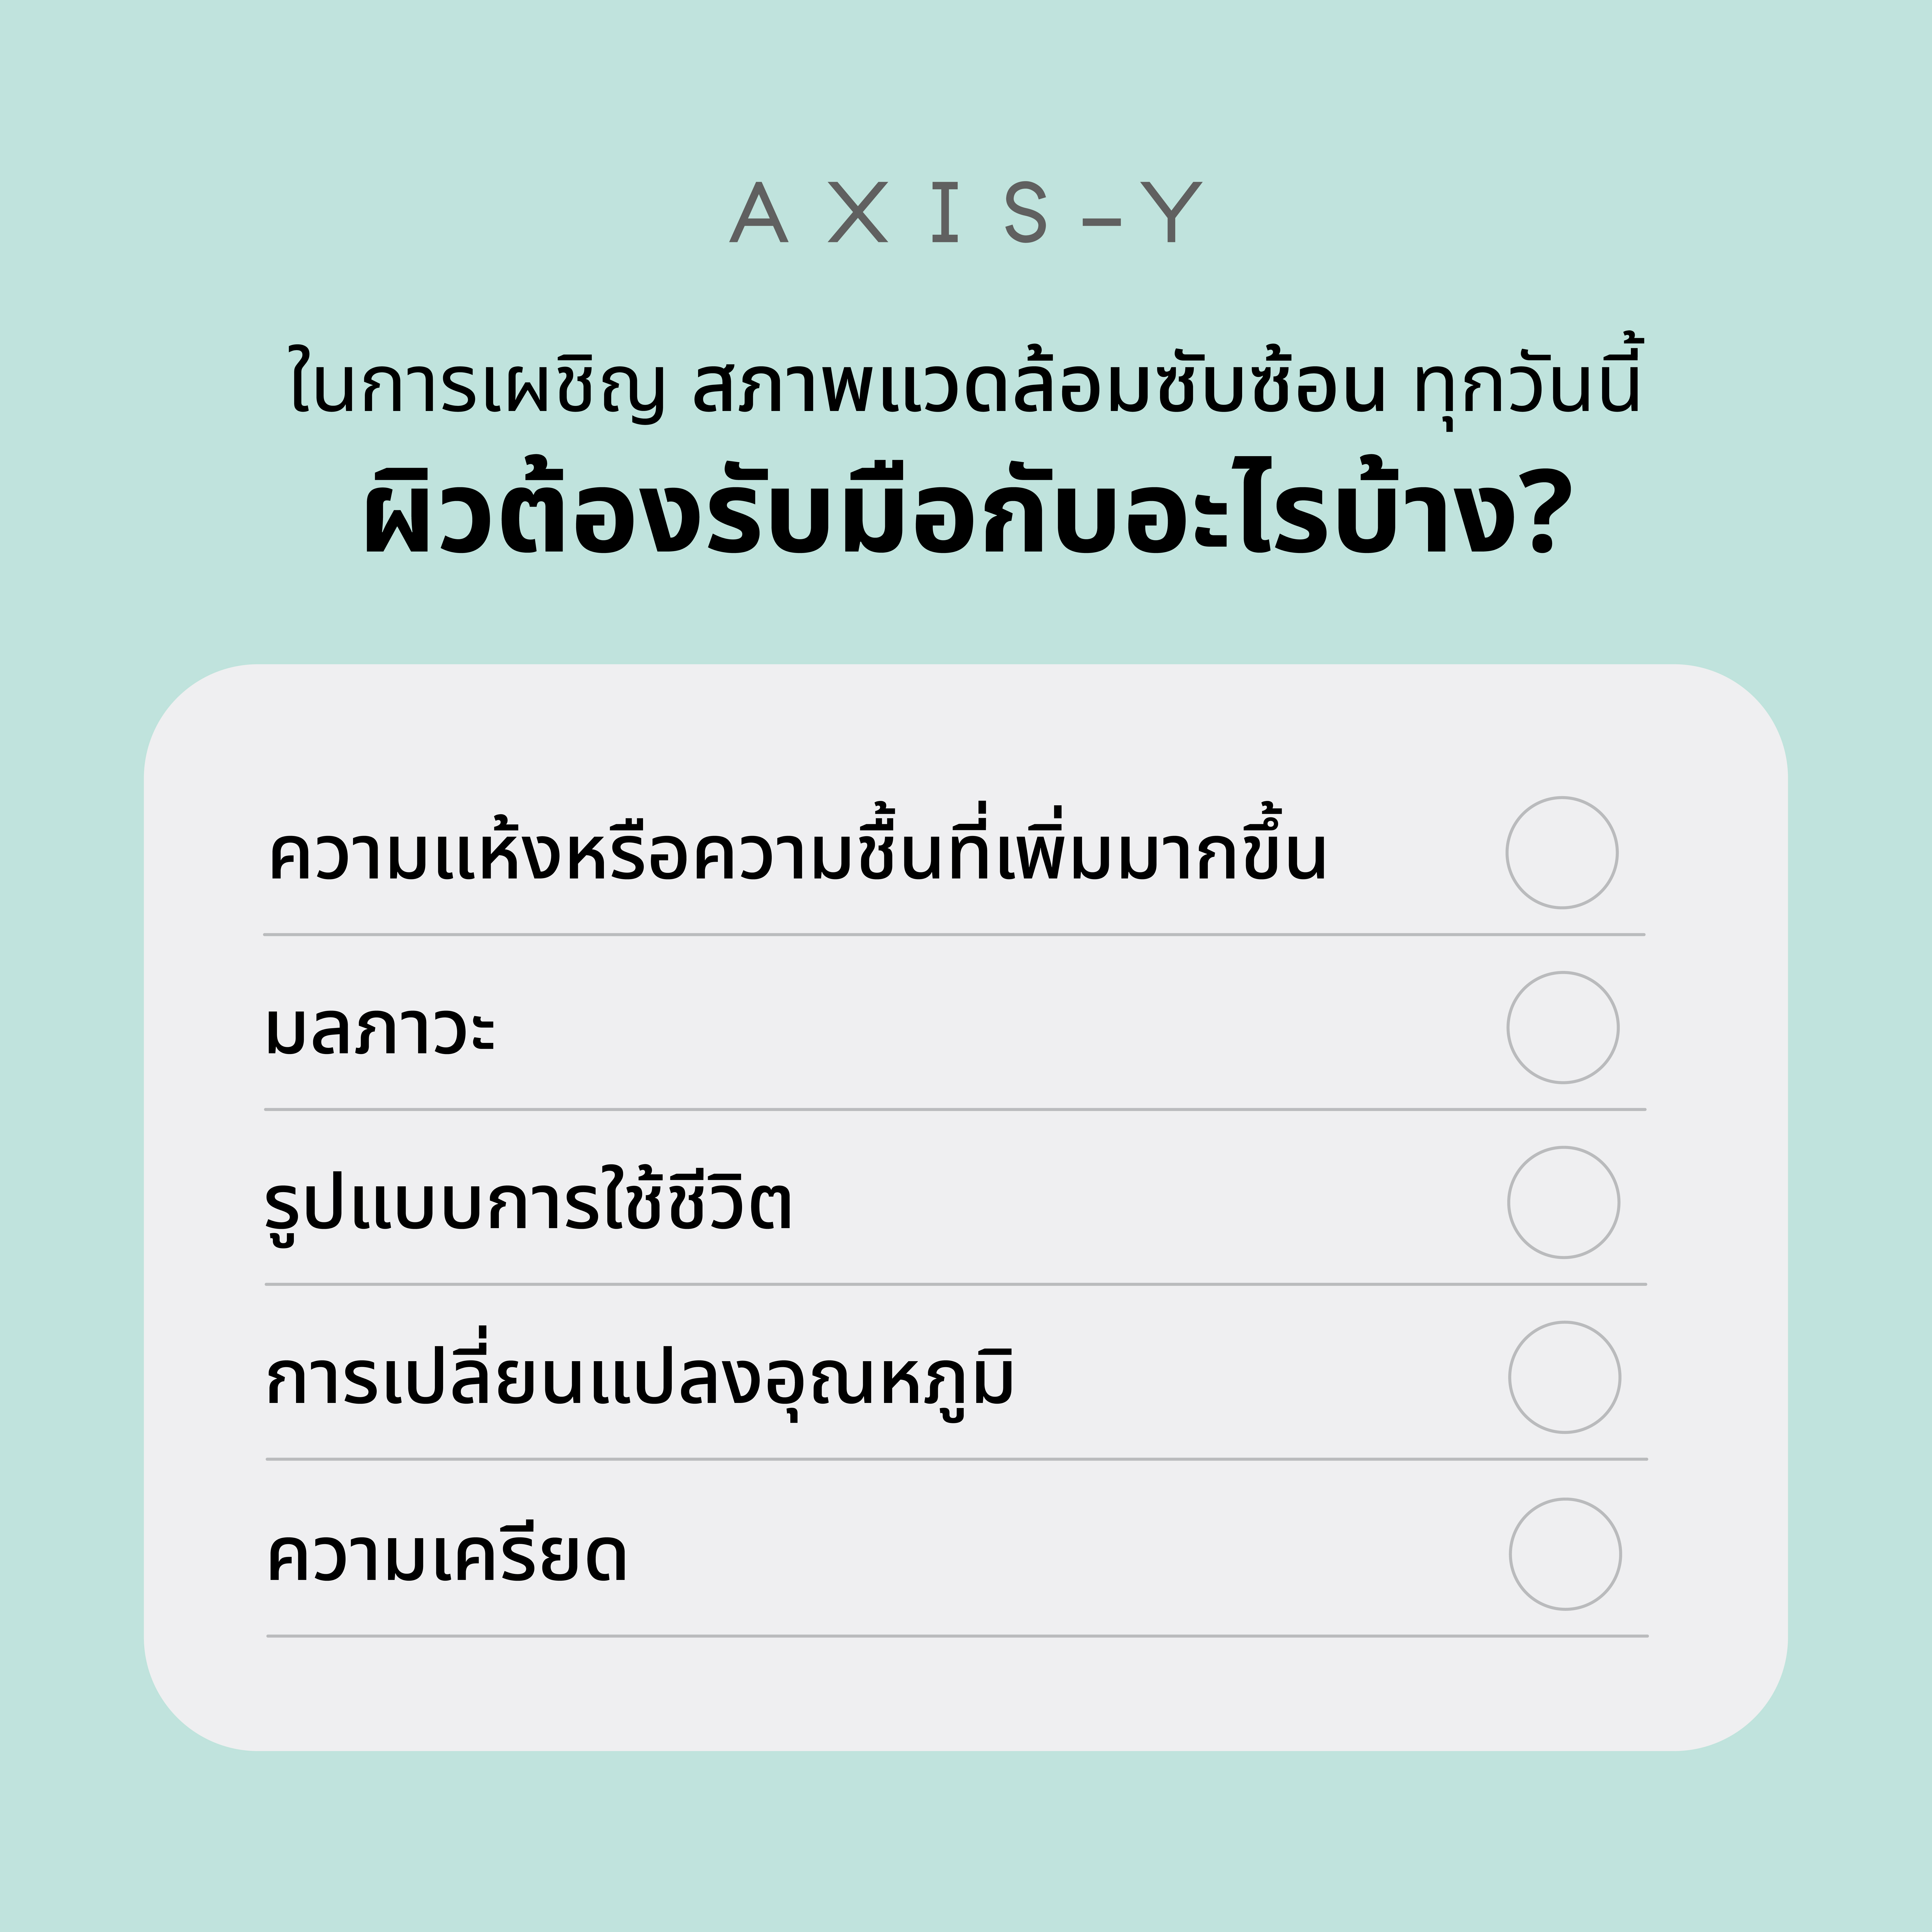 AXIS-Y Thailand